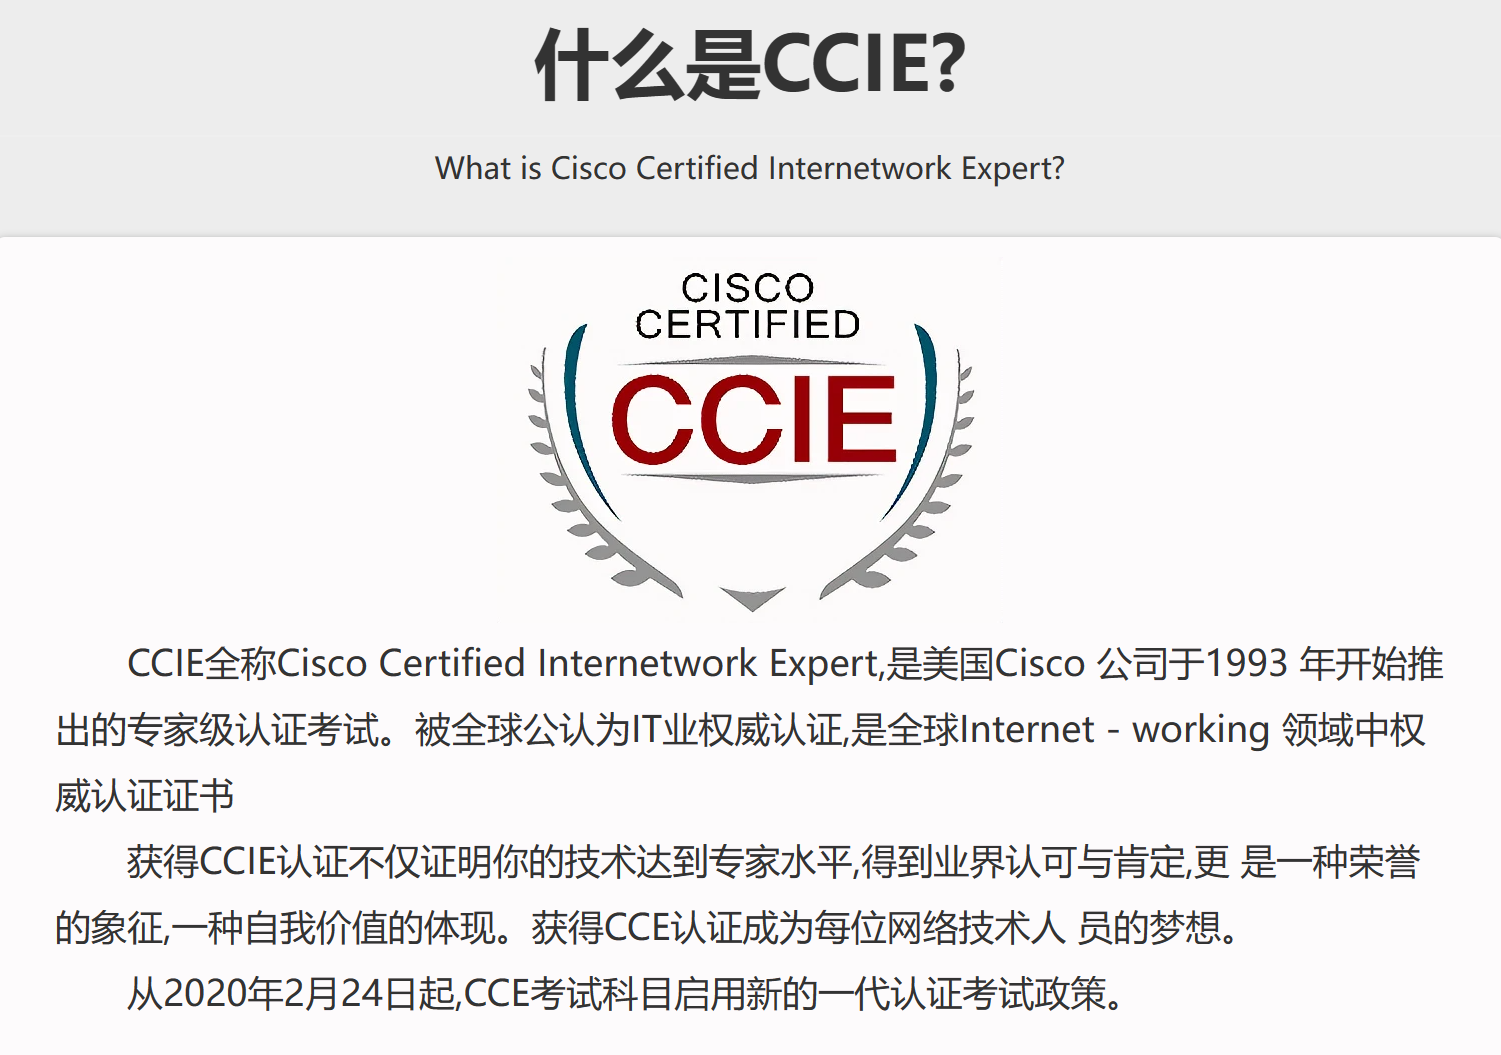 CCIE EI 互联网专家认证理论班